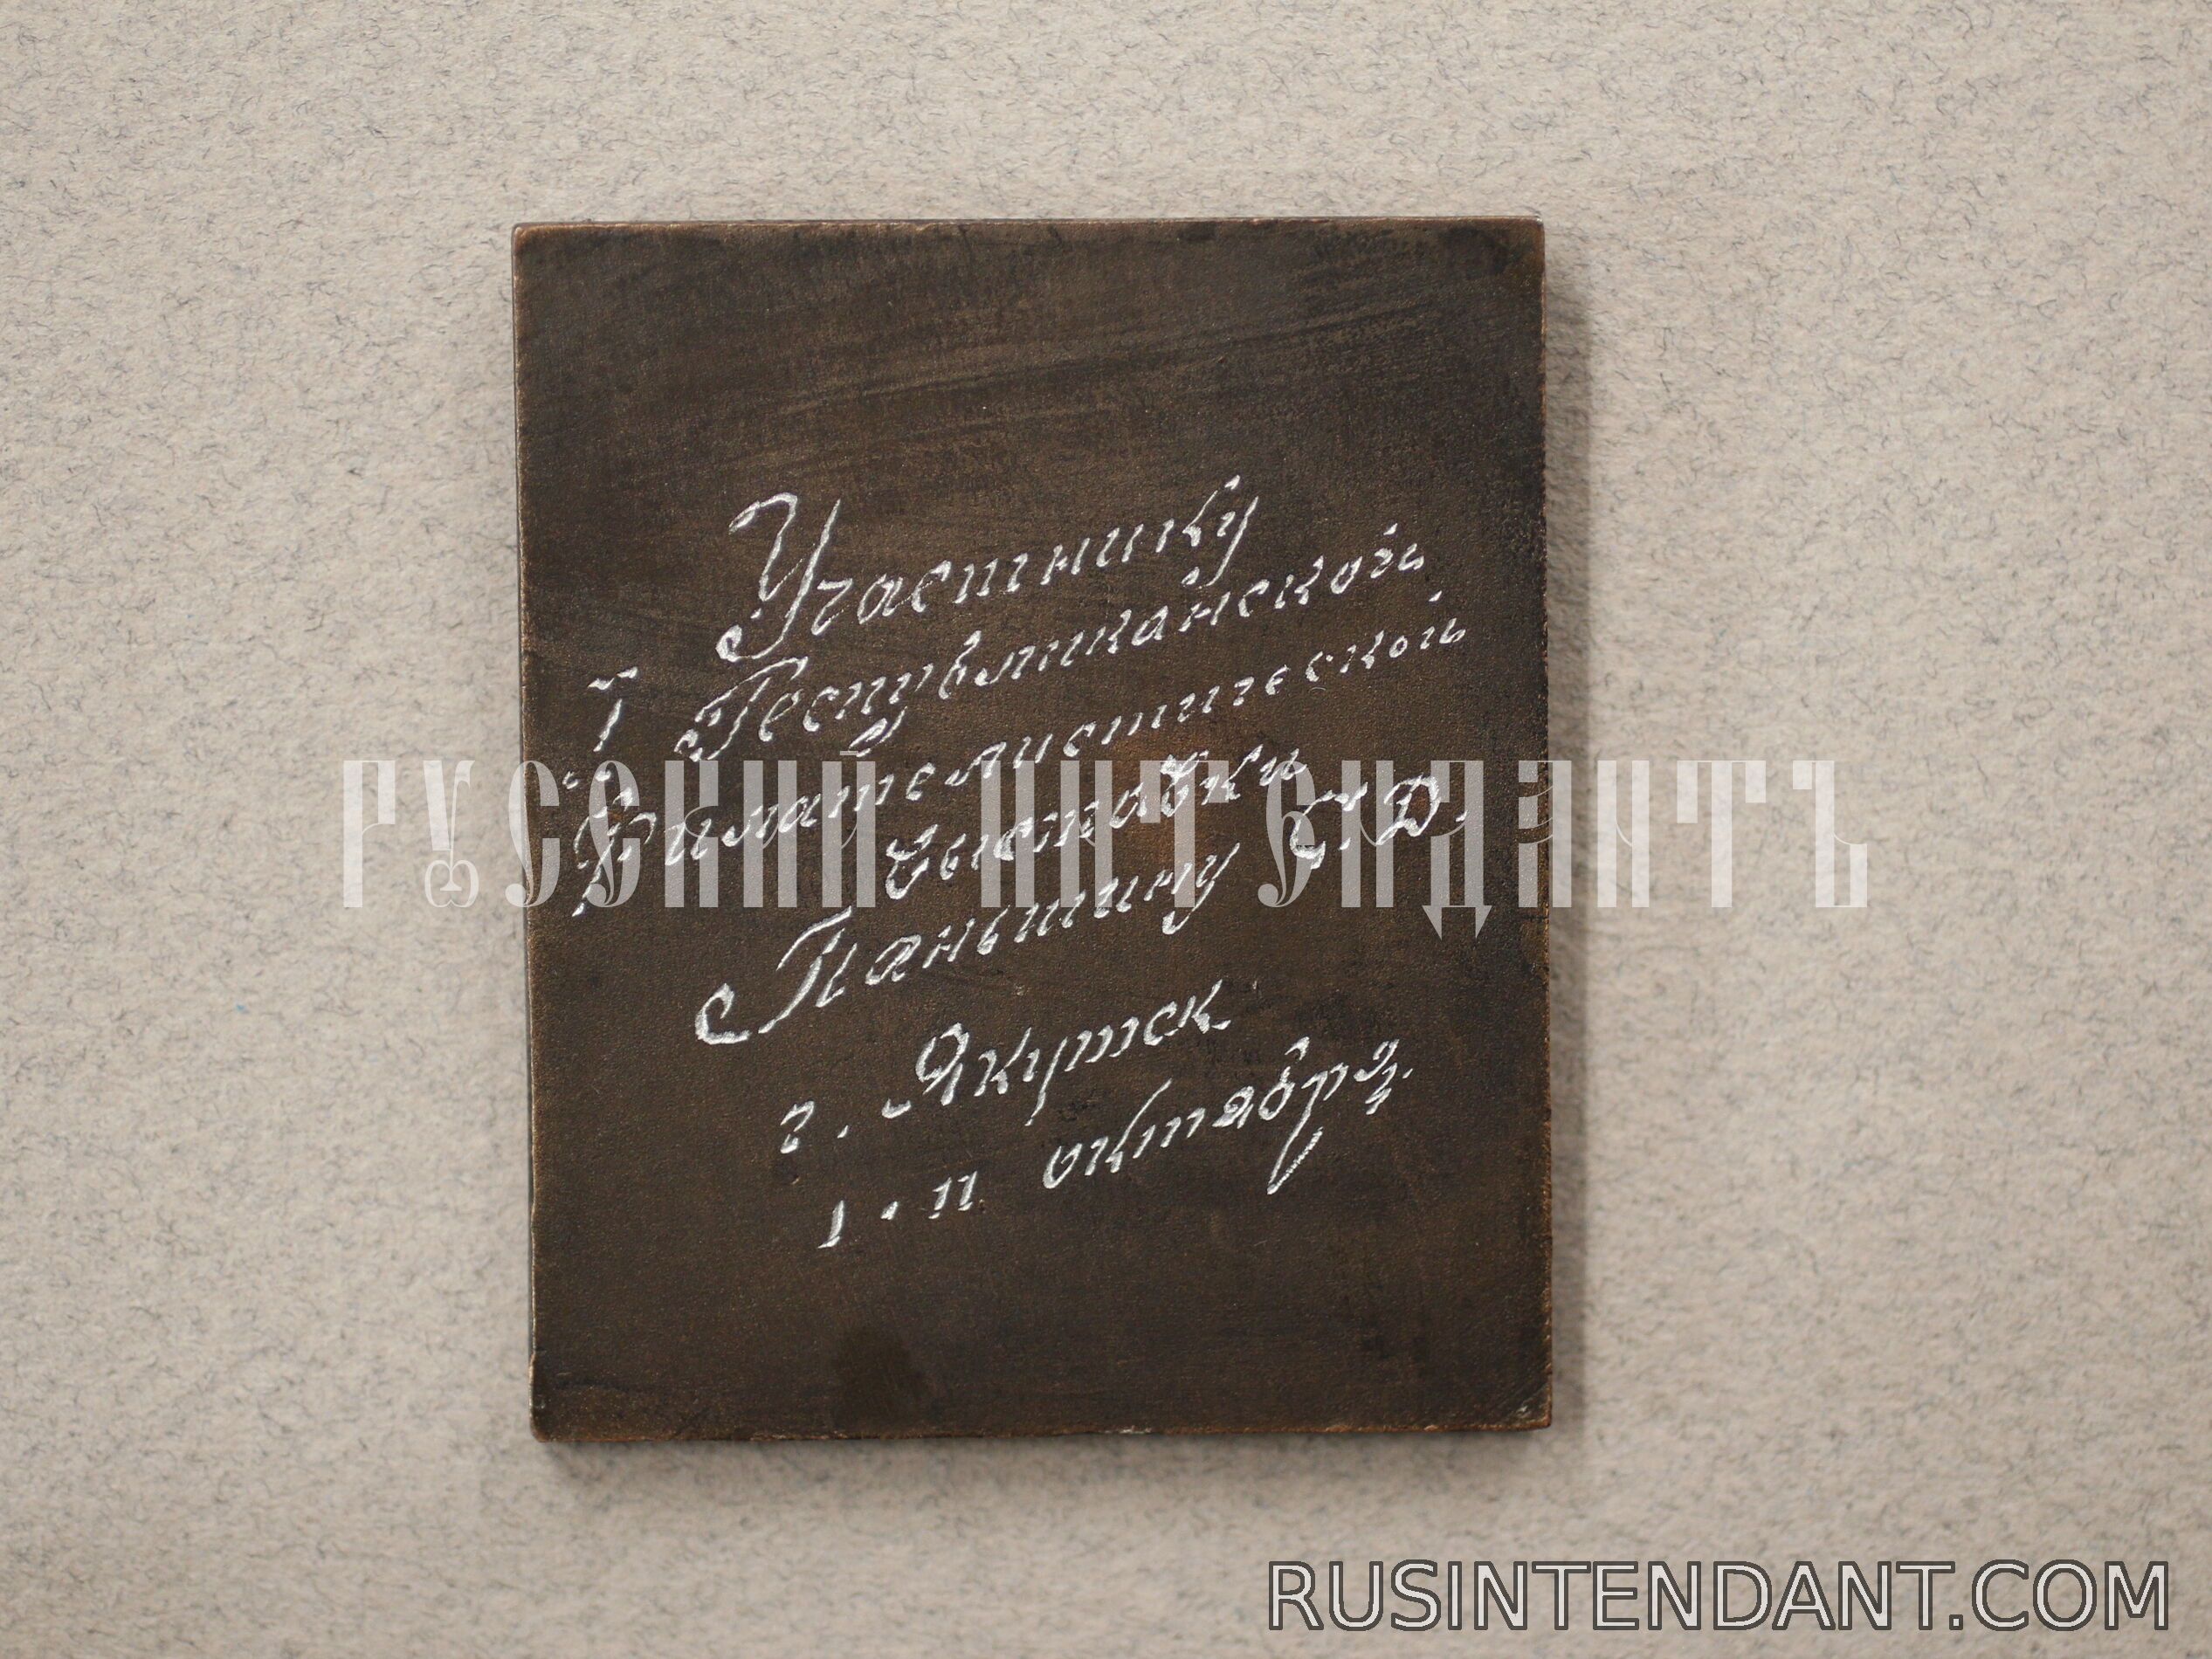 Фото 2: Плакетка «Всесоюзная филателистическая выставка 1870-1970». 